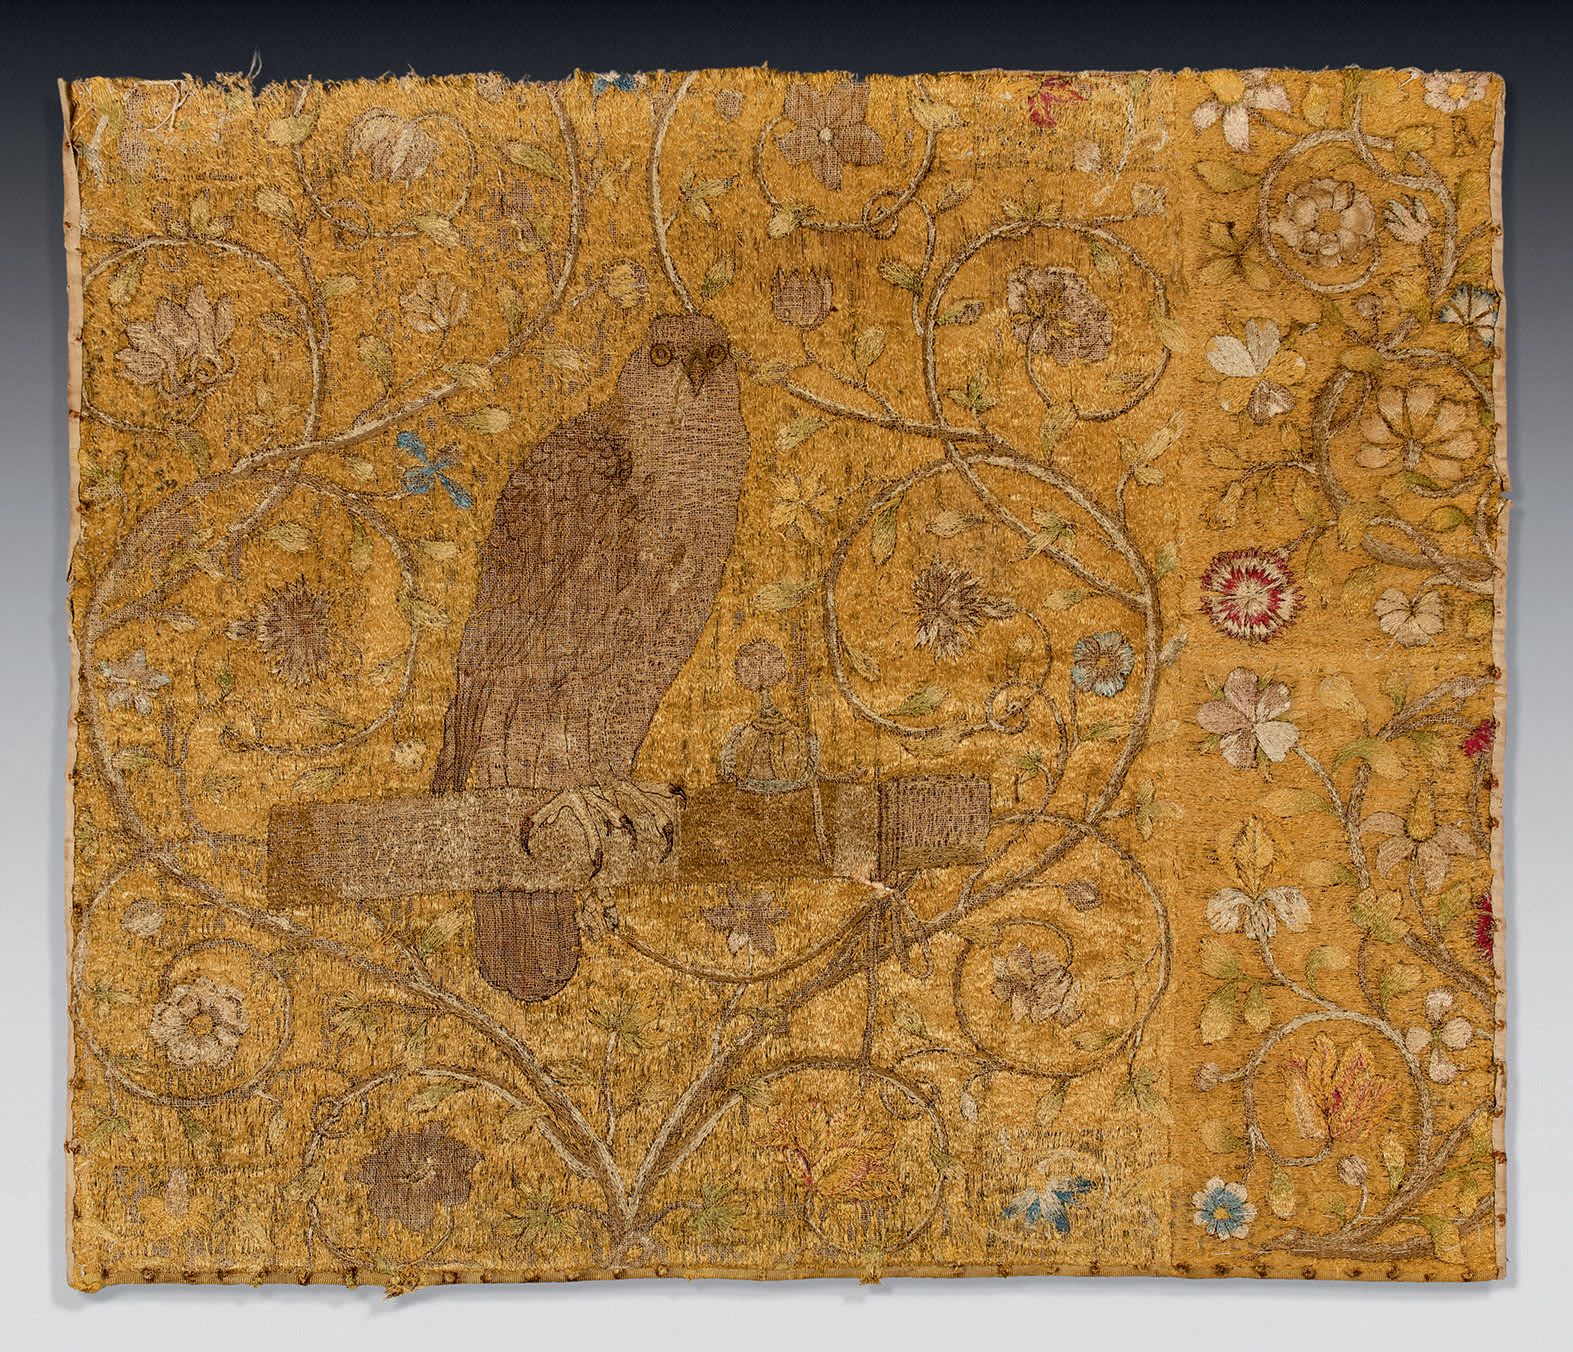 Null 庆祝猎鹰艺术的丝质针刺挂件的显著和罕见的碎片、
法国或佛兰德斯，16世纪下半叶。
非常漂亮的表现了一只胸前有斑点的游隼，它在梁上休息，身边是它的羽毛伴&hellip;